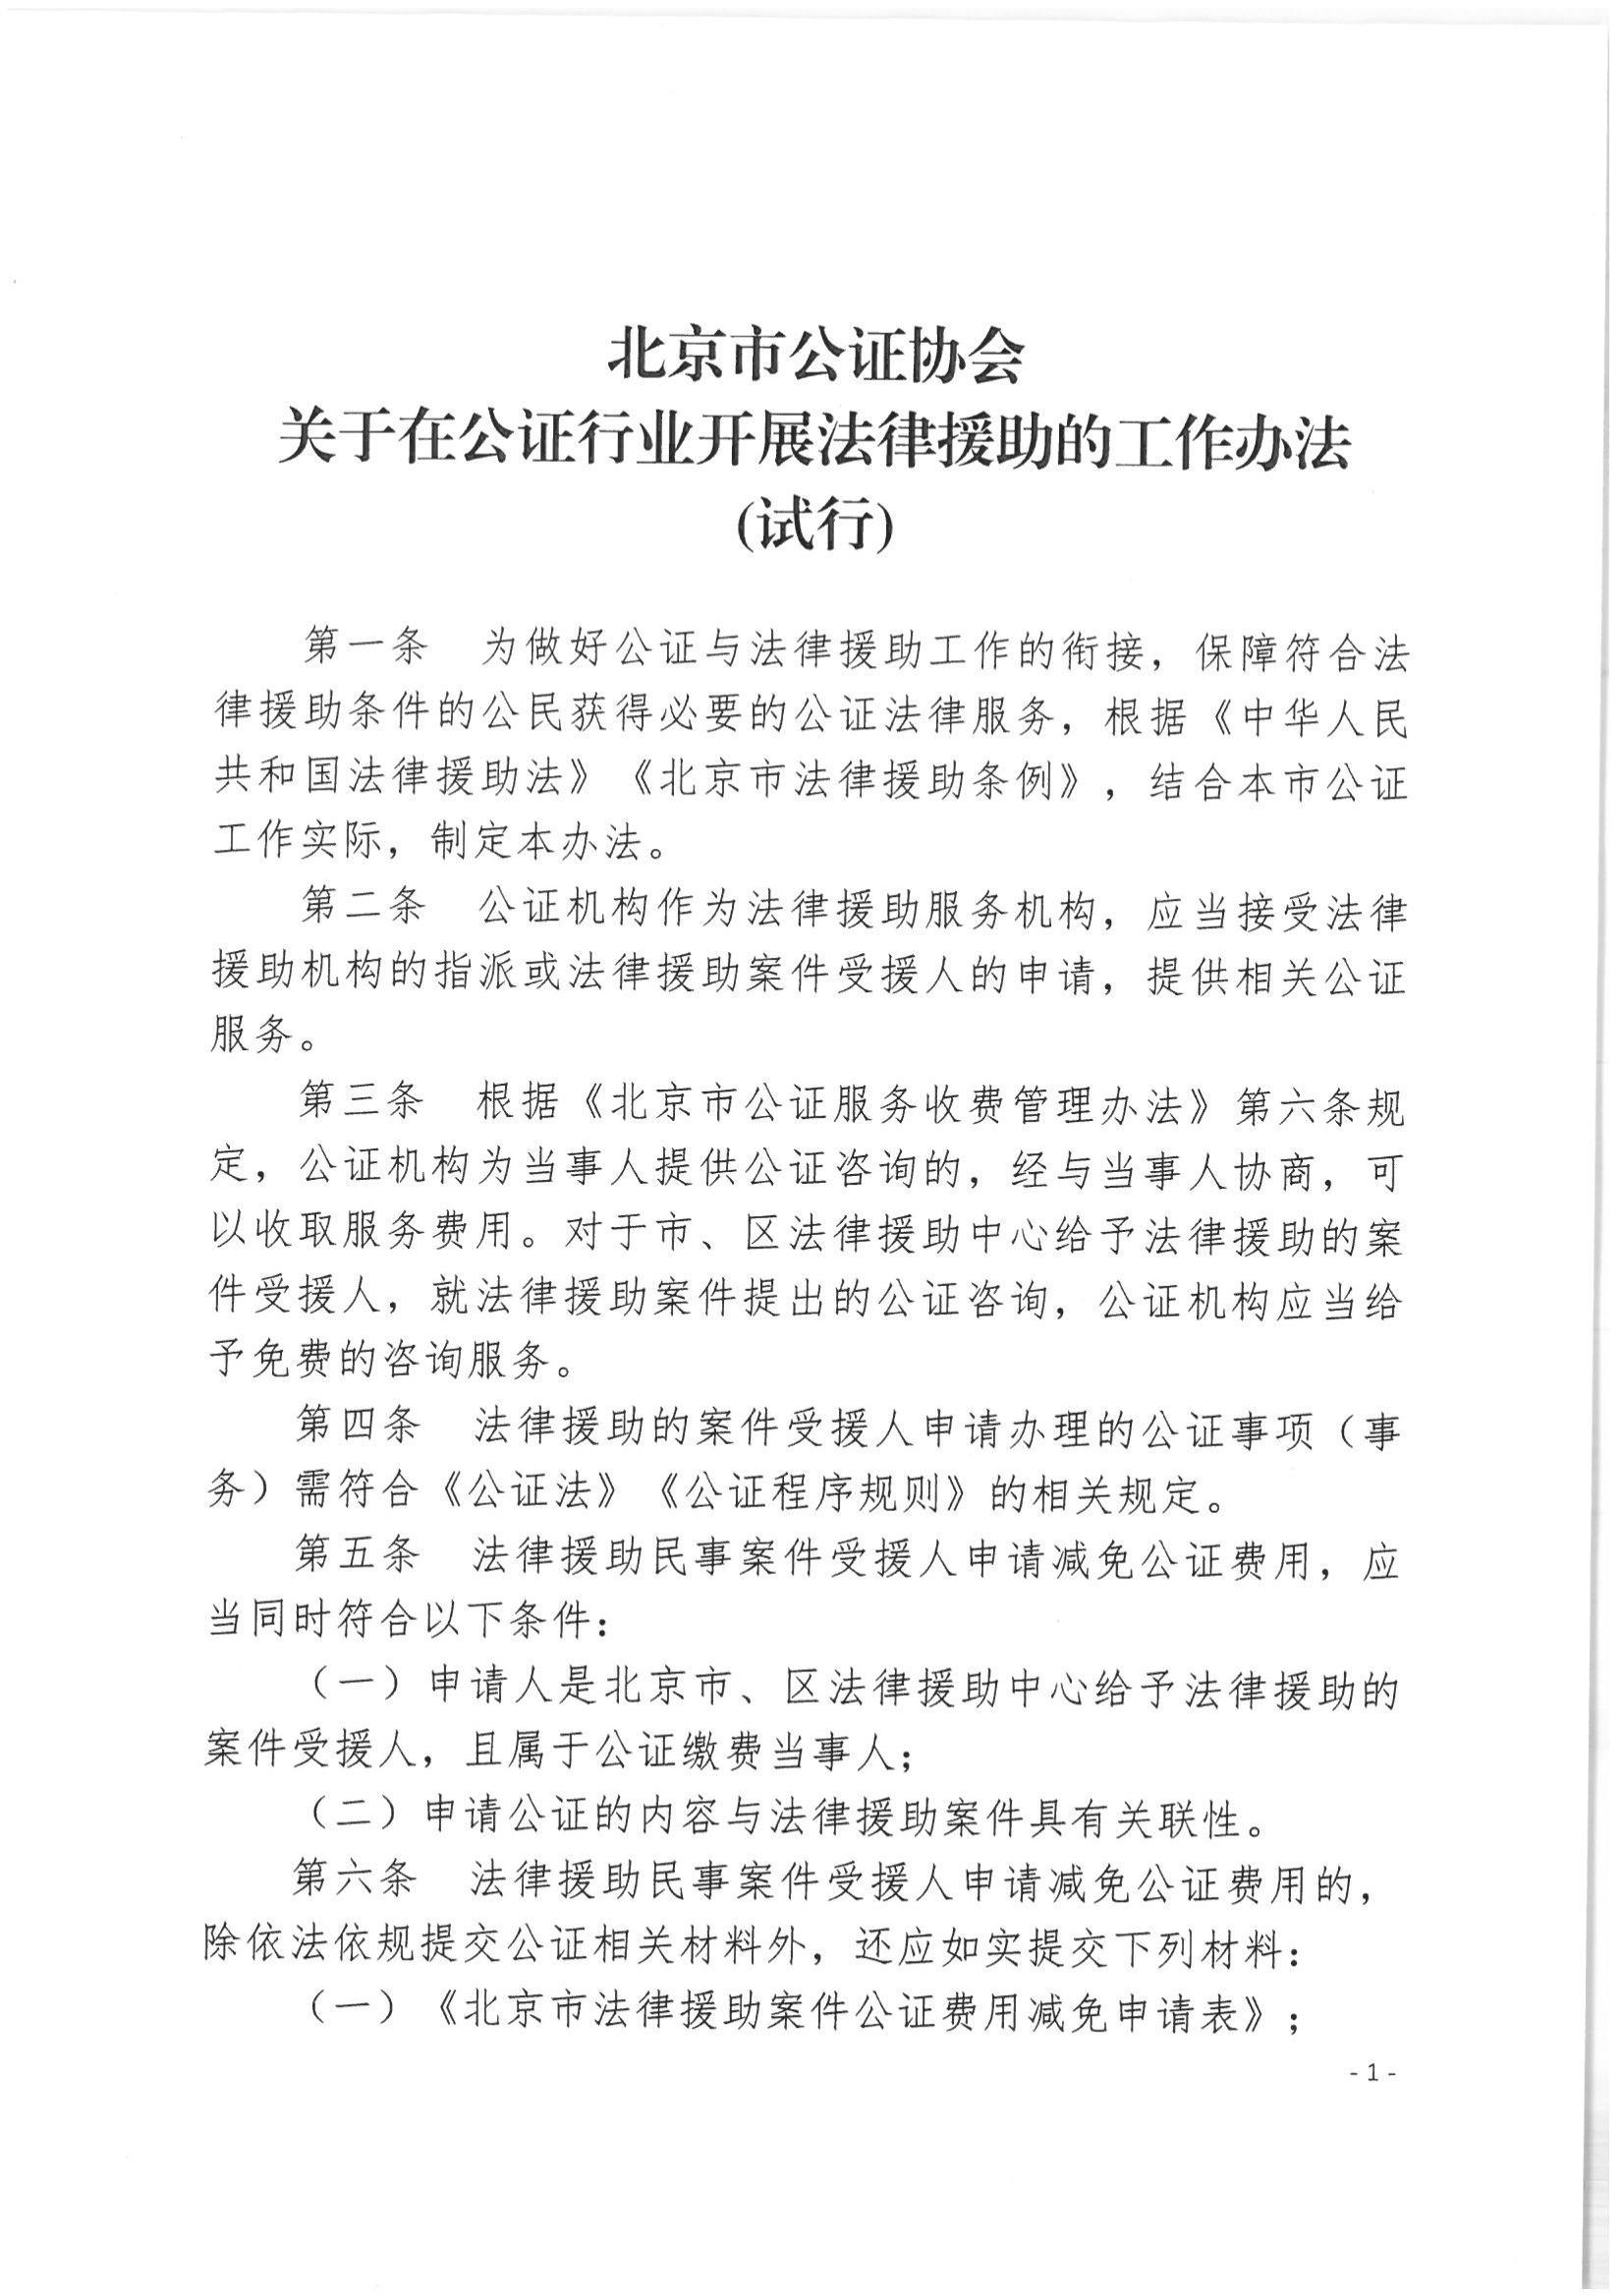 北京市公证协会关于印发《北京市公证协会关于在公证行业开展法律援助的工作办法（试行）》的通知(1)_01